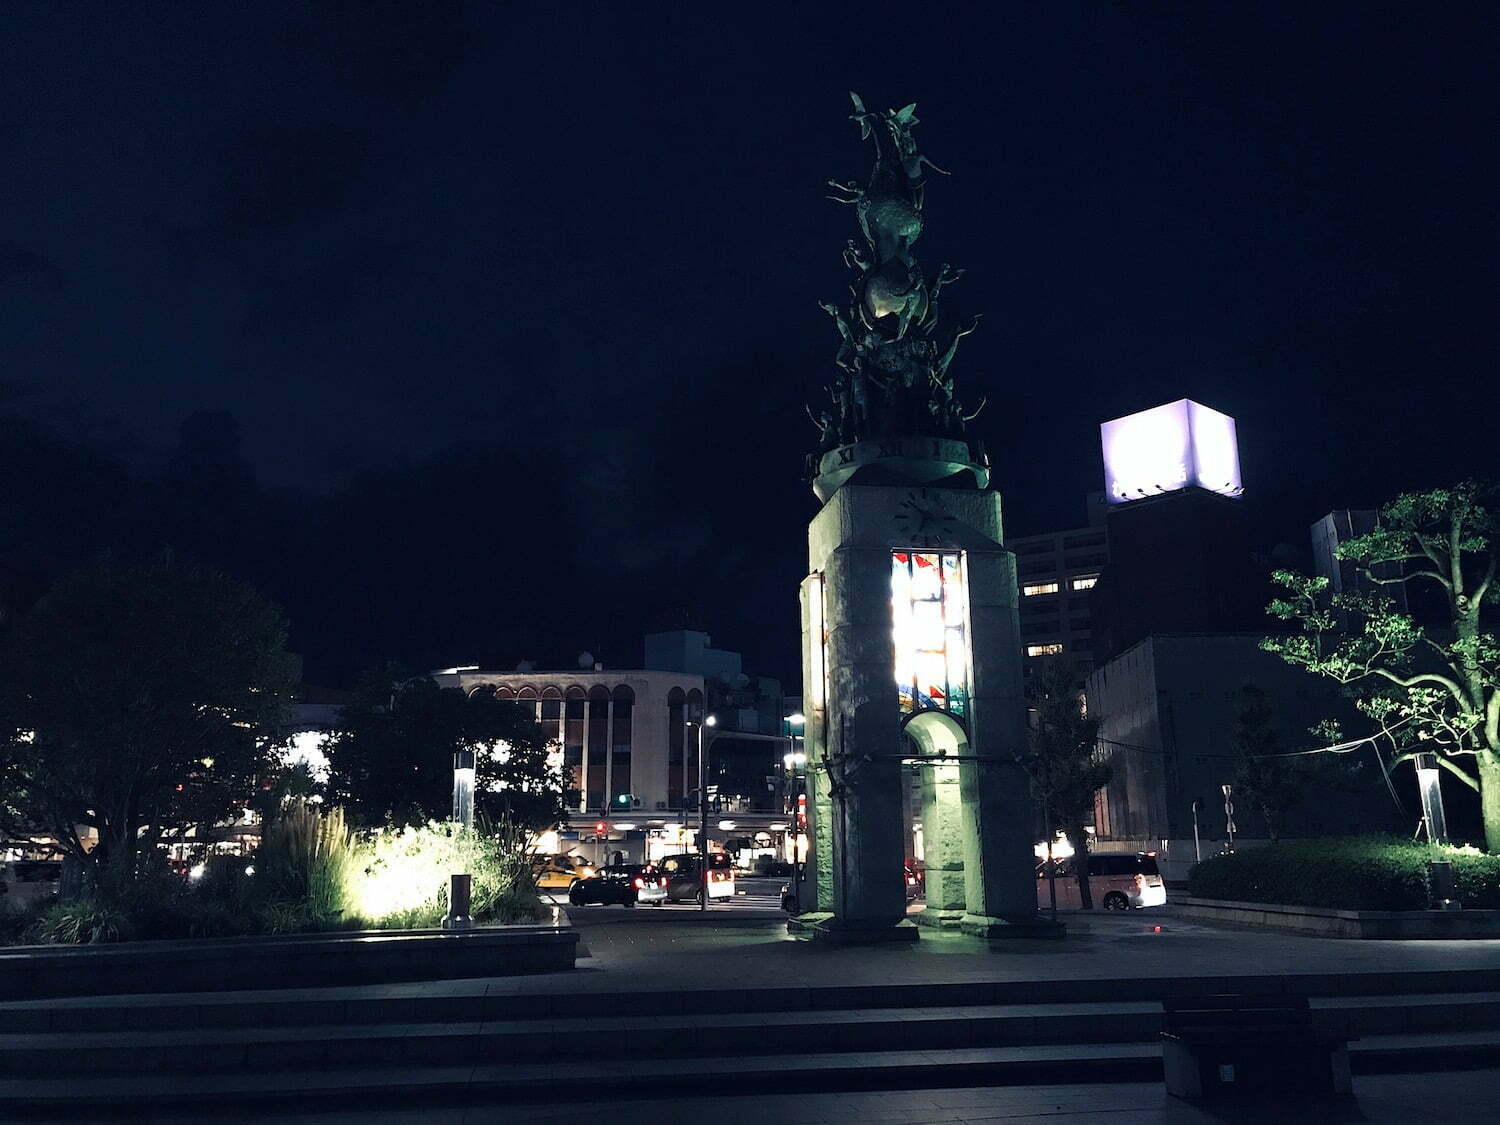 Night in Tottori